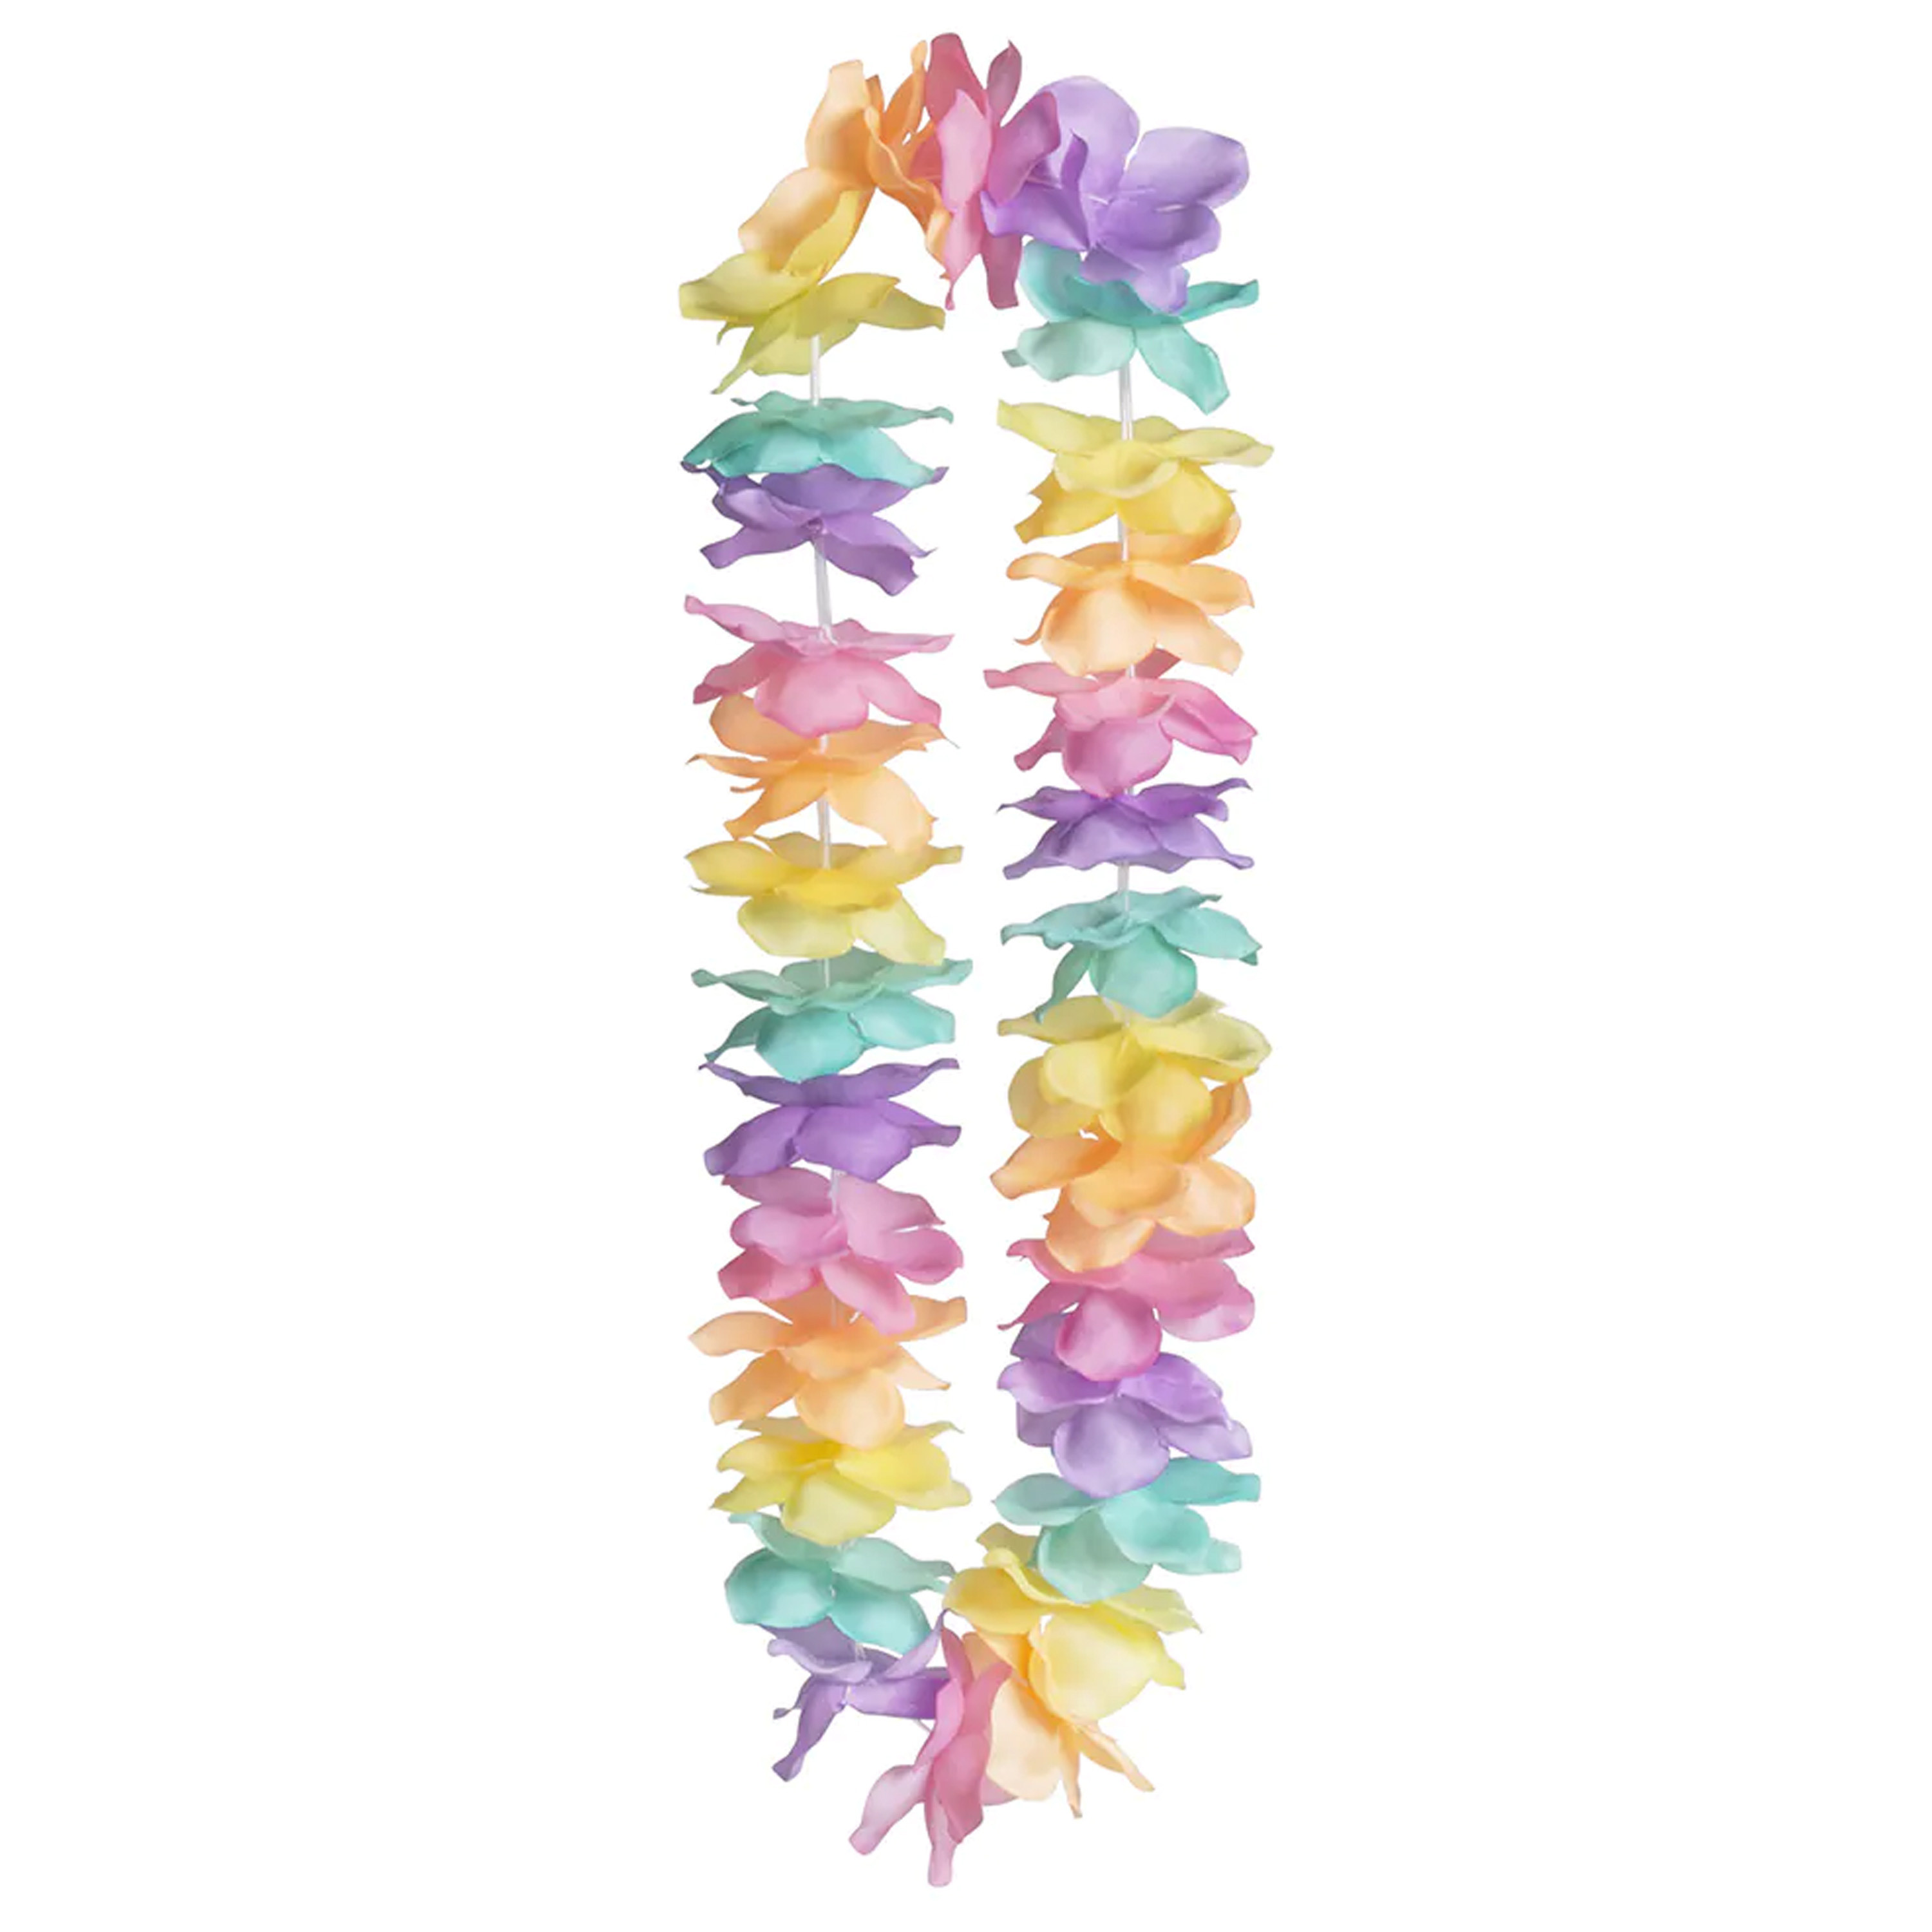 Toppers - Hawaii krans/slinger - Tropische/zomerse kleuren mix - Bloemen hals slingers